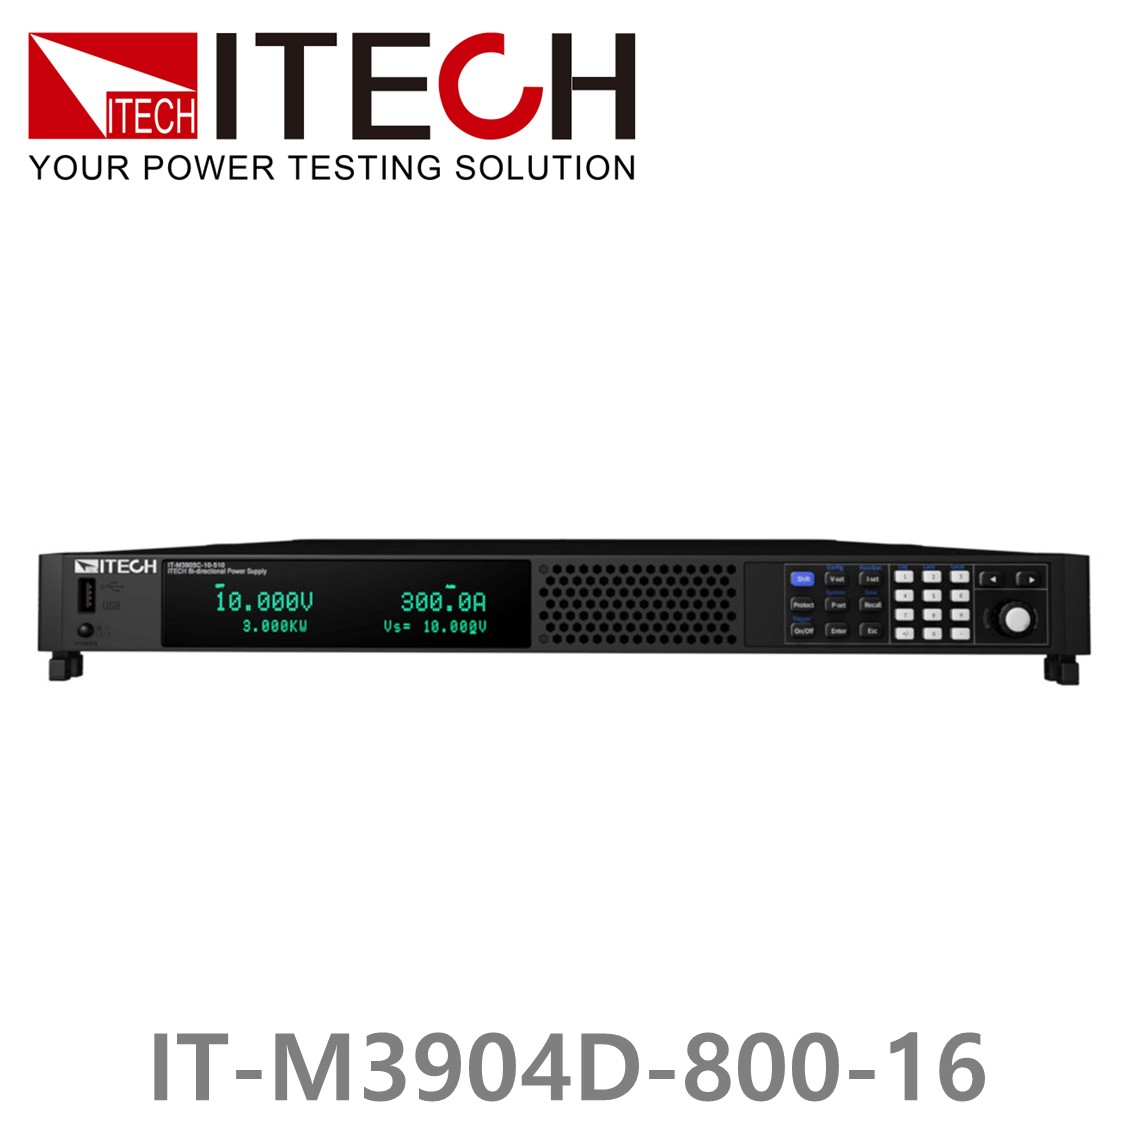 [ ITECH ] IT-M3904D-800-16 양방향 프로그래머블 DC전원공급기, DC파워서플라이